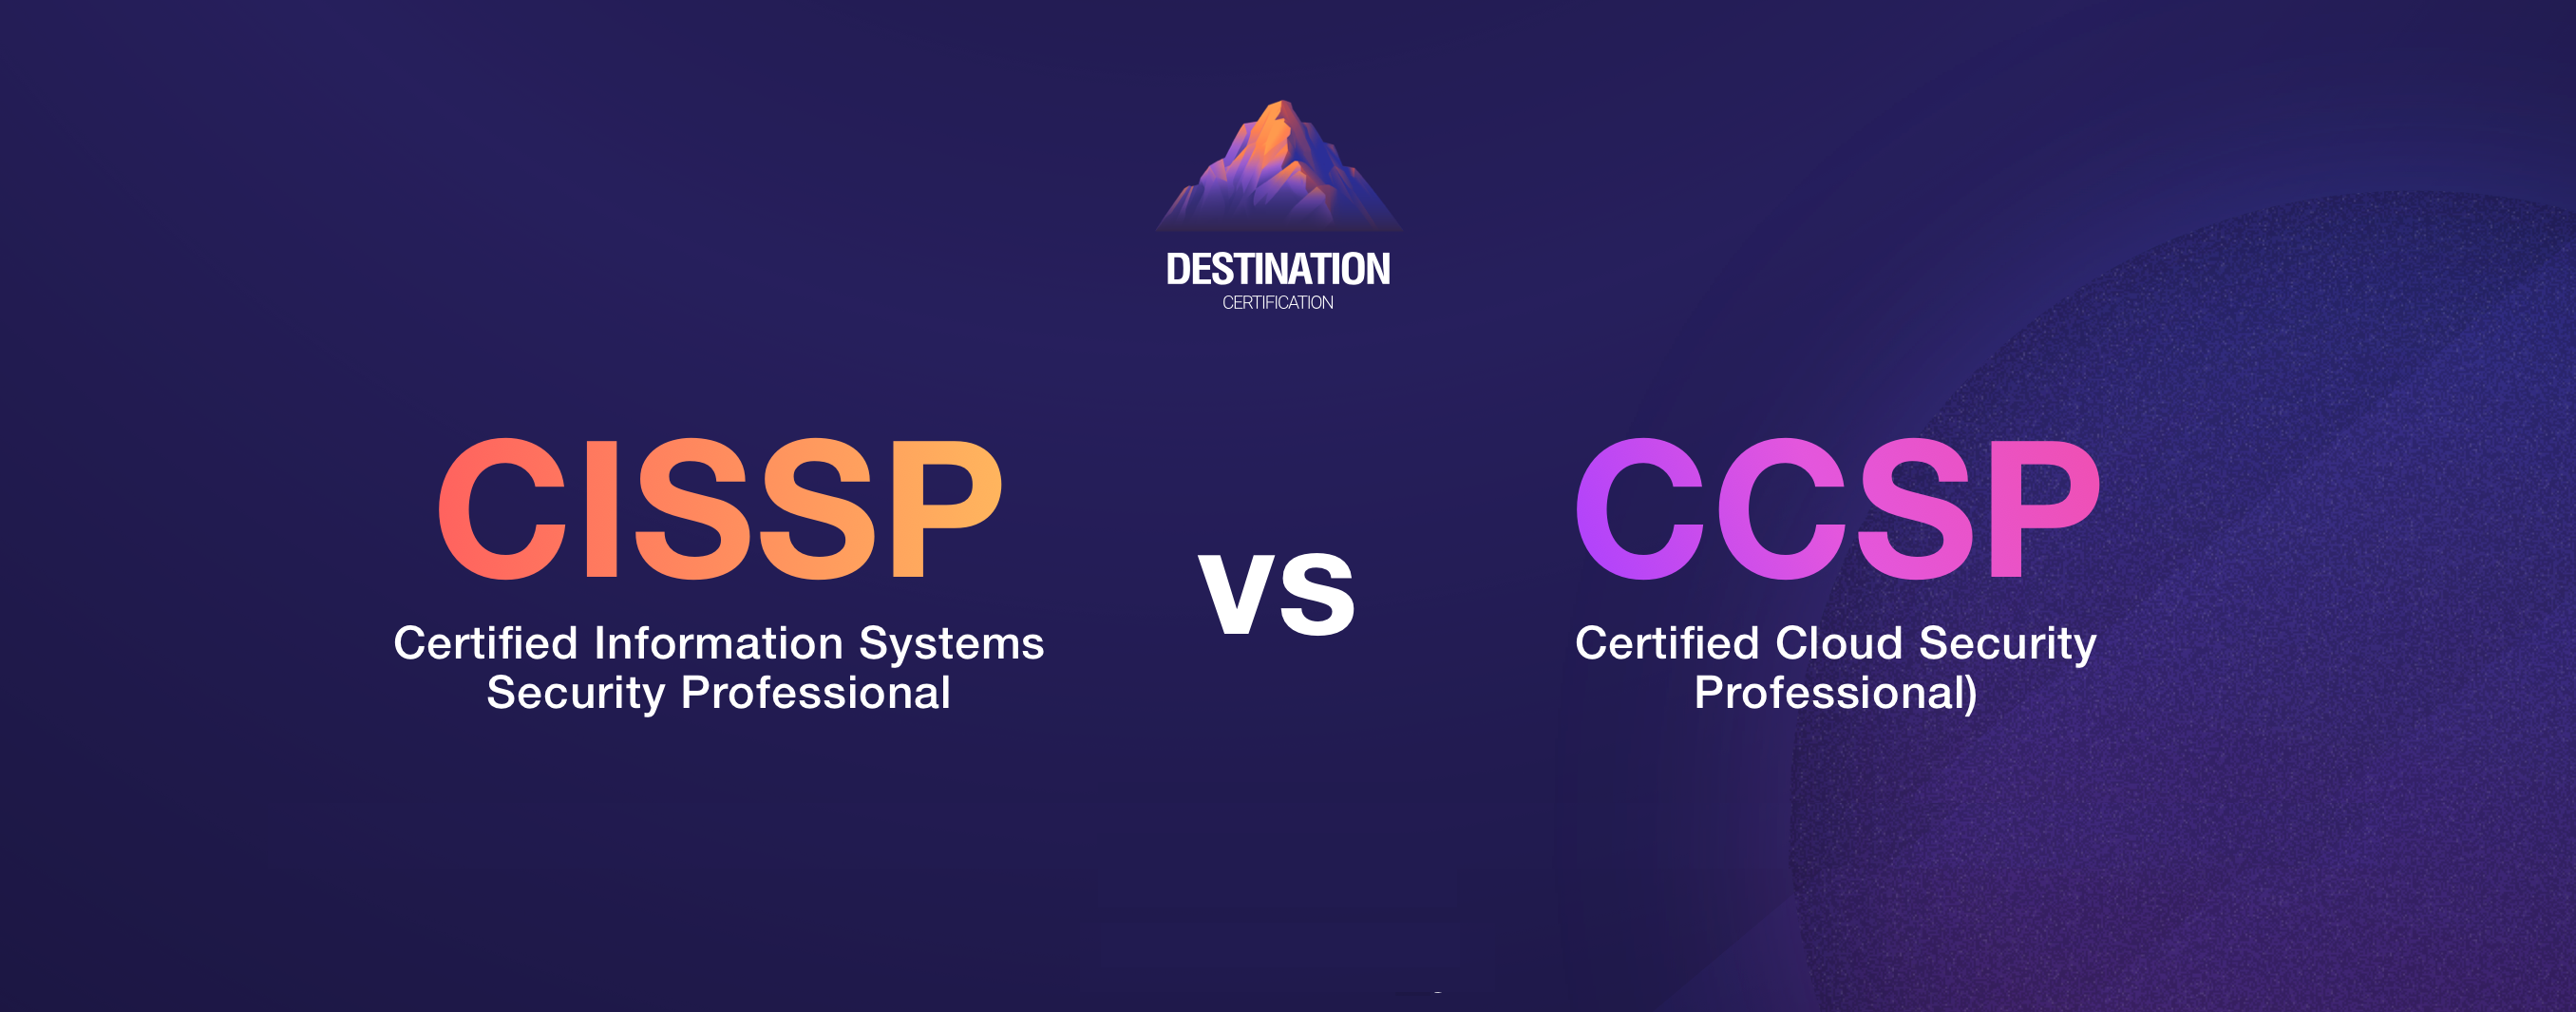 Image of cissp vs ccsp - Destination Certification